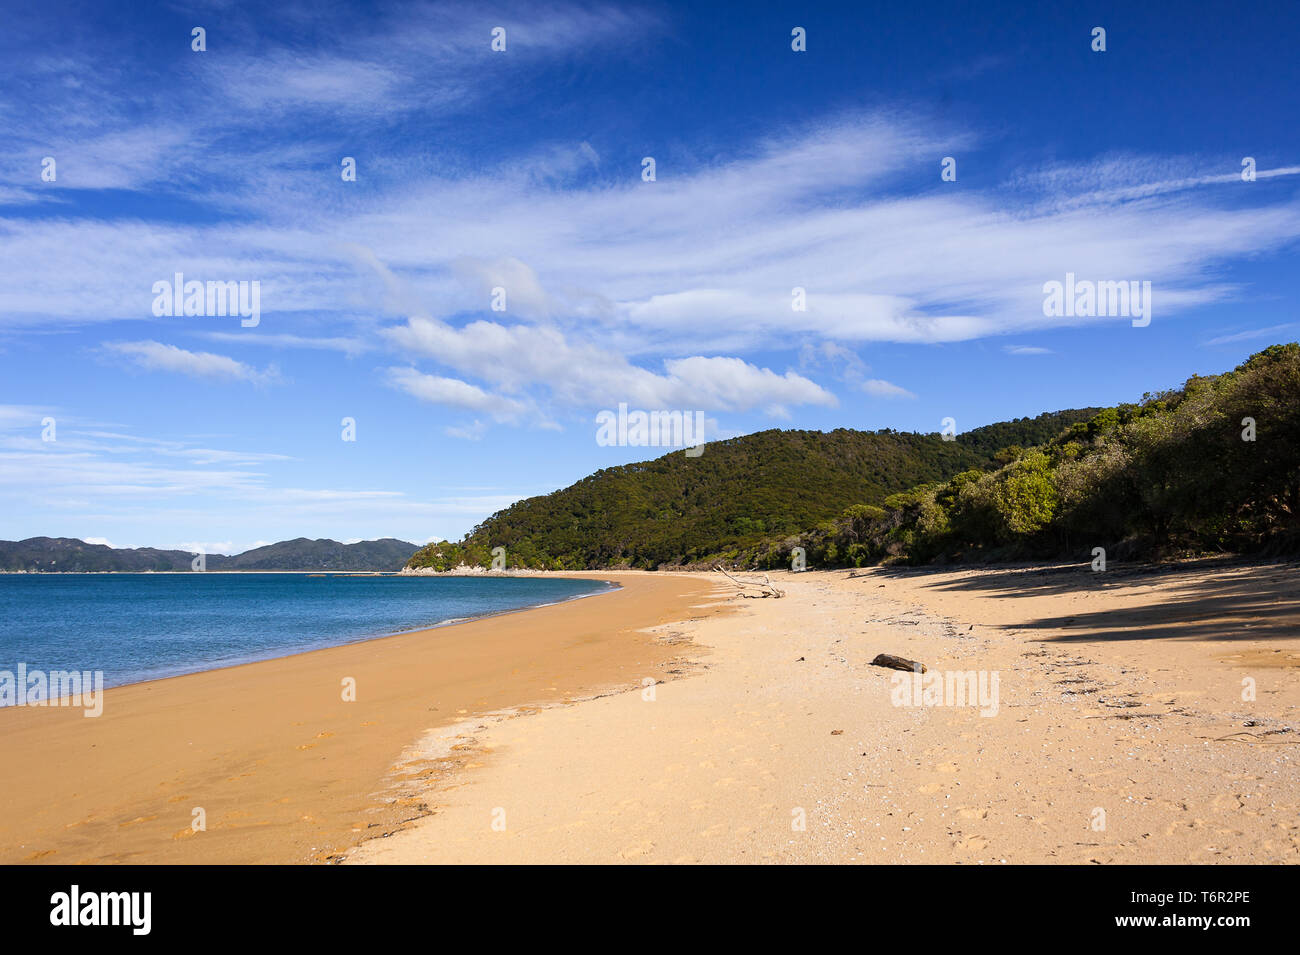 Sable doré, nuage bleu ciel. Totaranui beach est une plage de 1 km de long dans la région de Tasman Nouvelle Zélande Banque D'Images